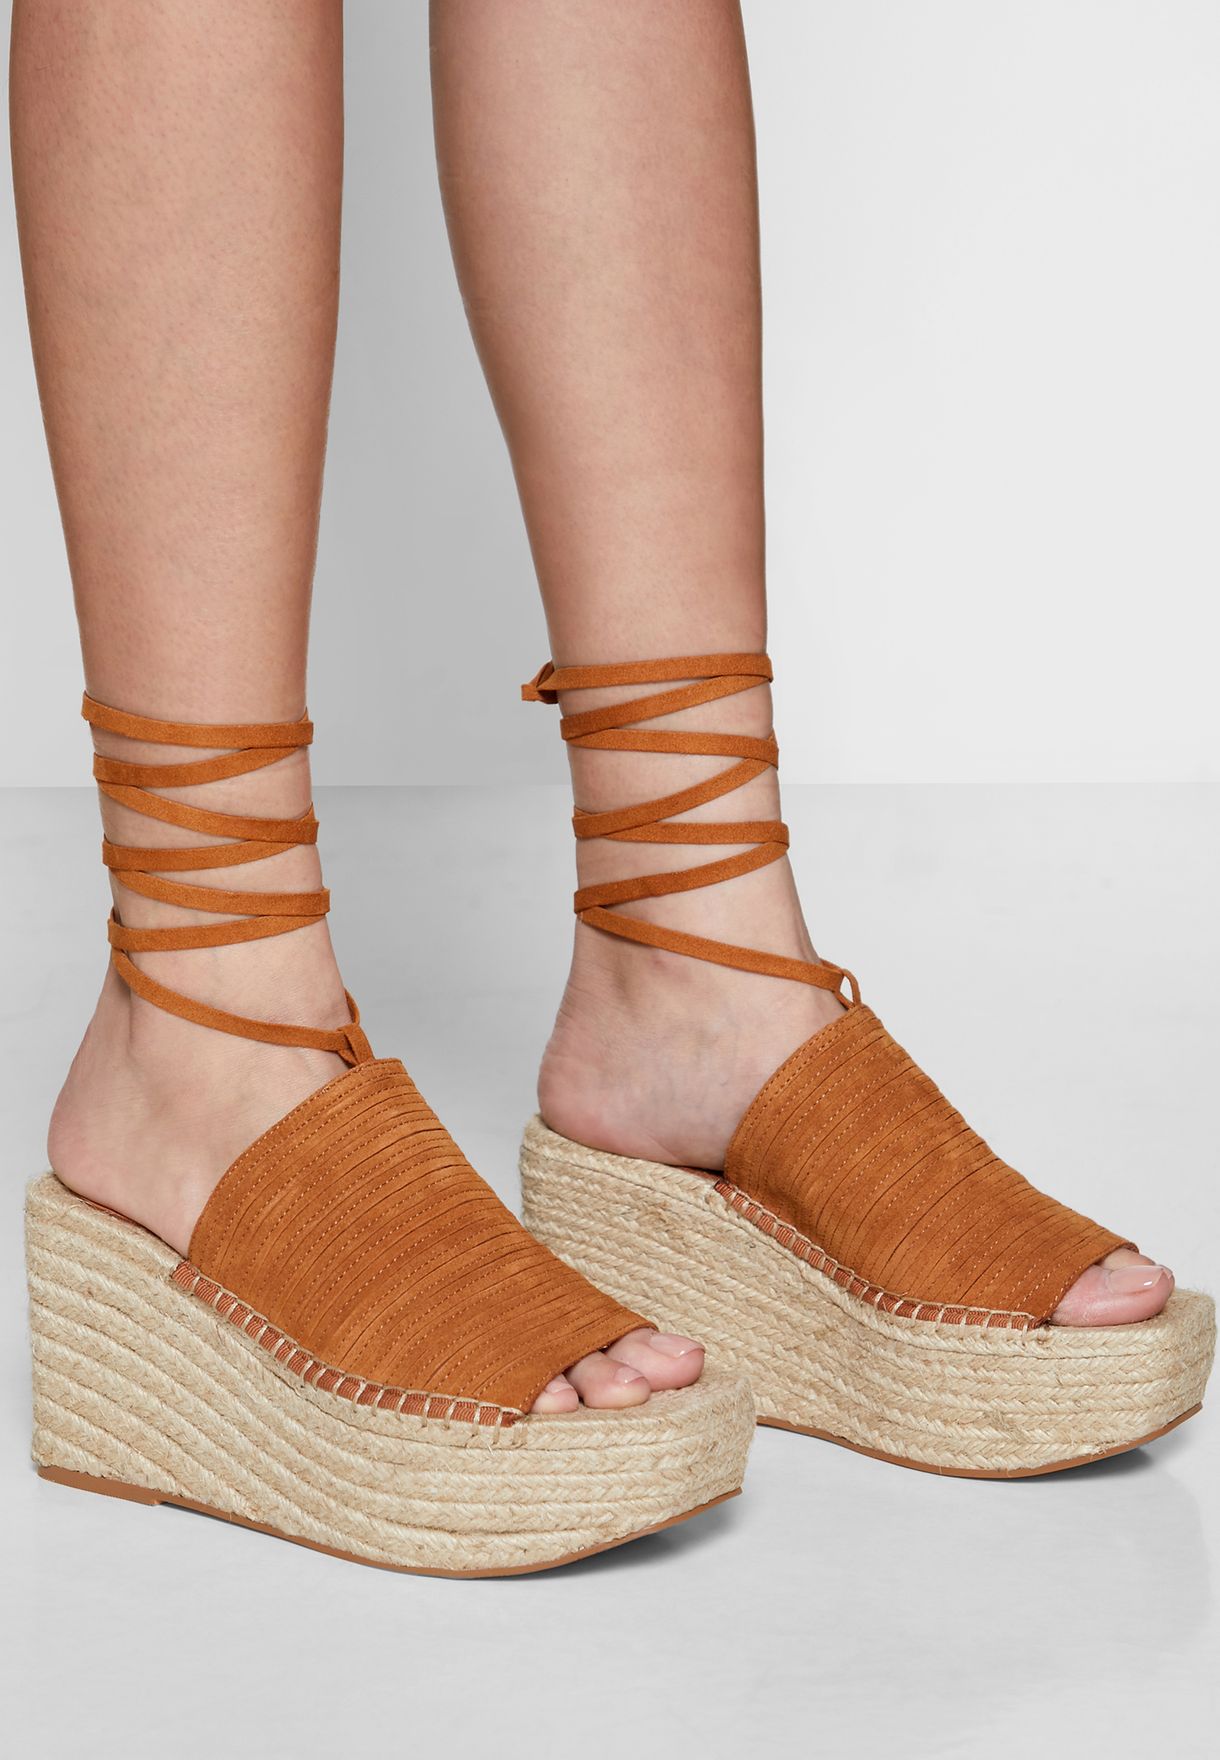 topshop tan sandals